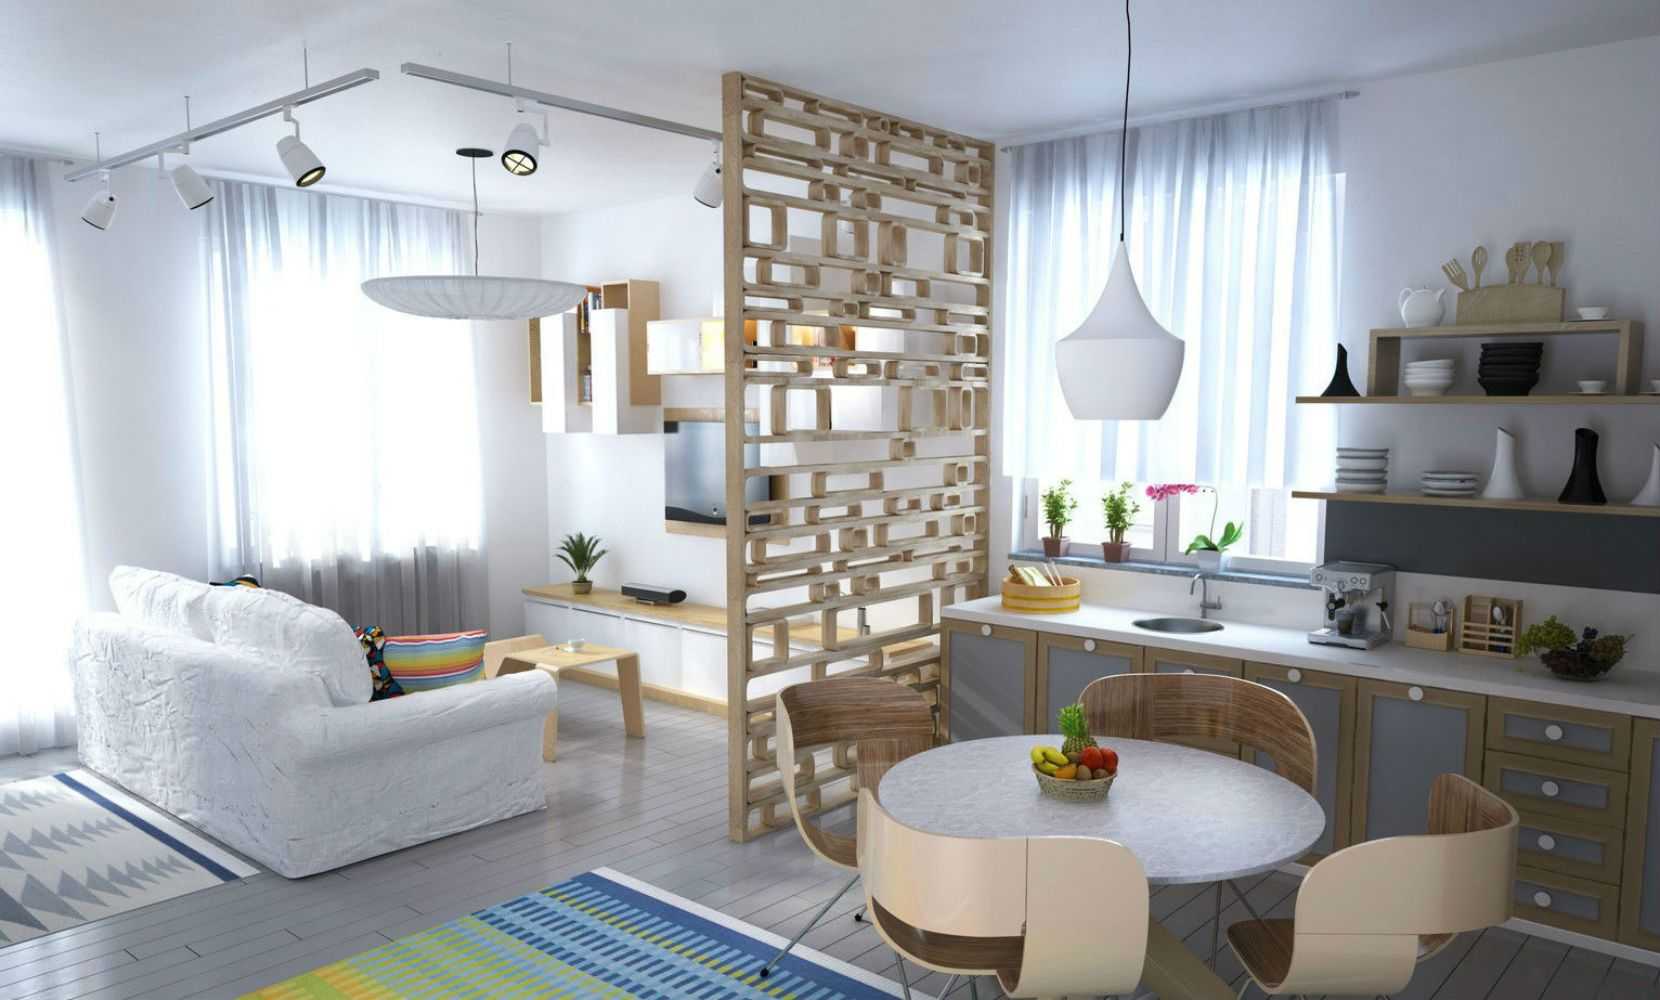 Дизайн маленькой студии  особенности оформления интерьера, плюсы и минусы Наиболее популярные стили для таких квартир и варианты оформления разных комнат Дизайн маленькой студии в зависимости от площади, а также нюансы выбора и расстановки мебели